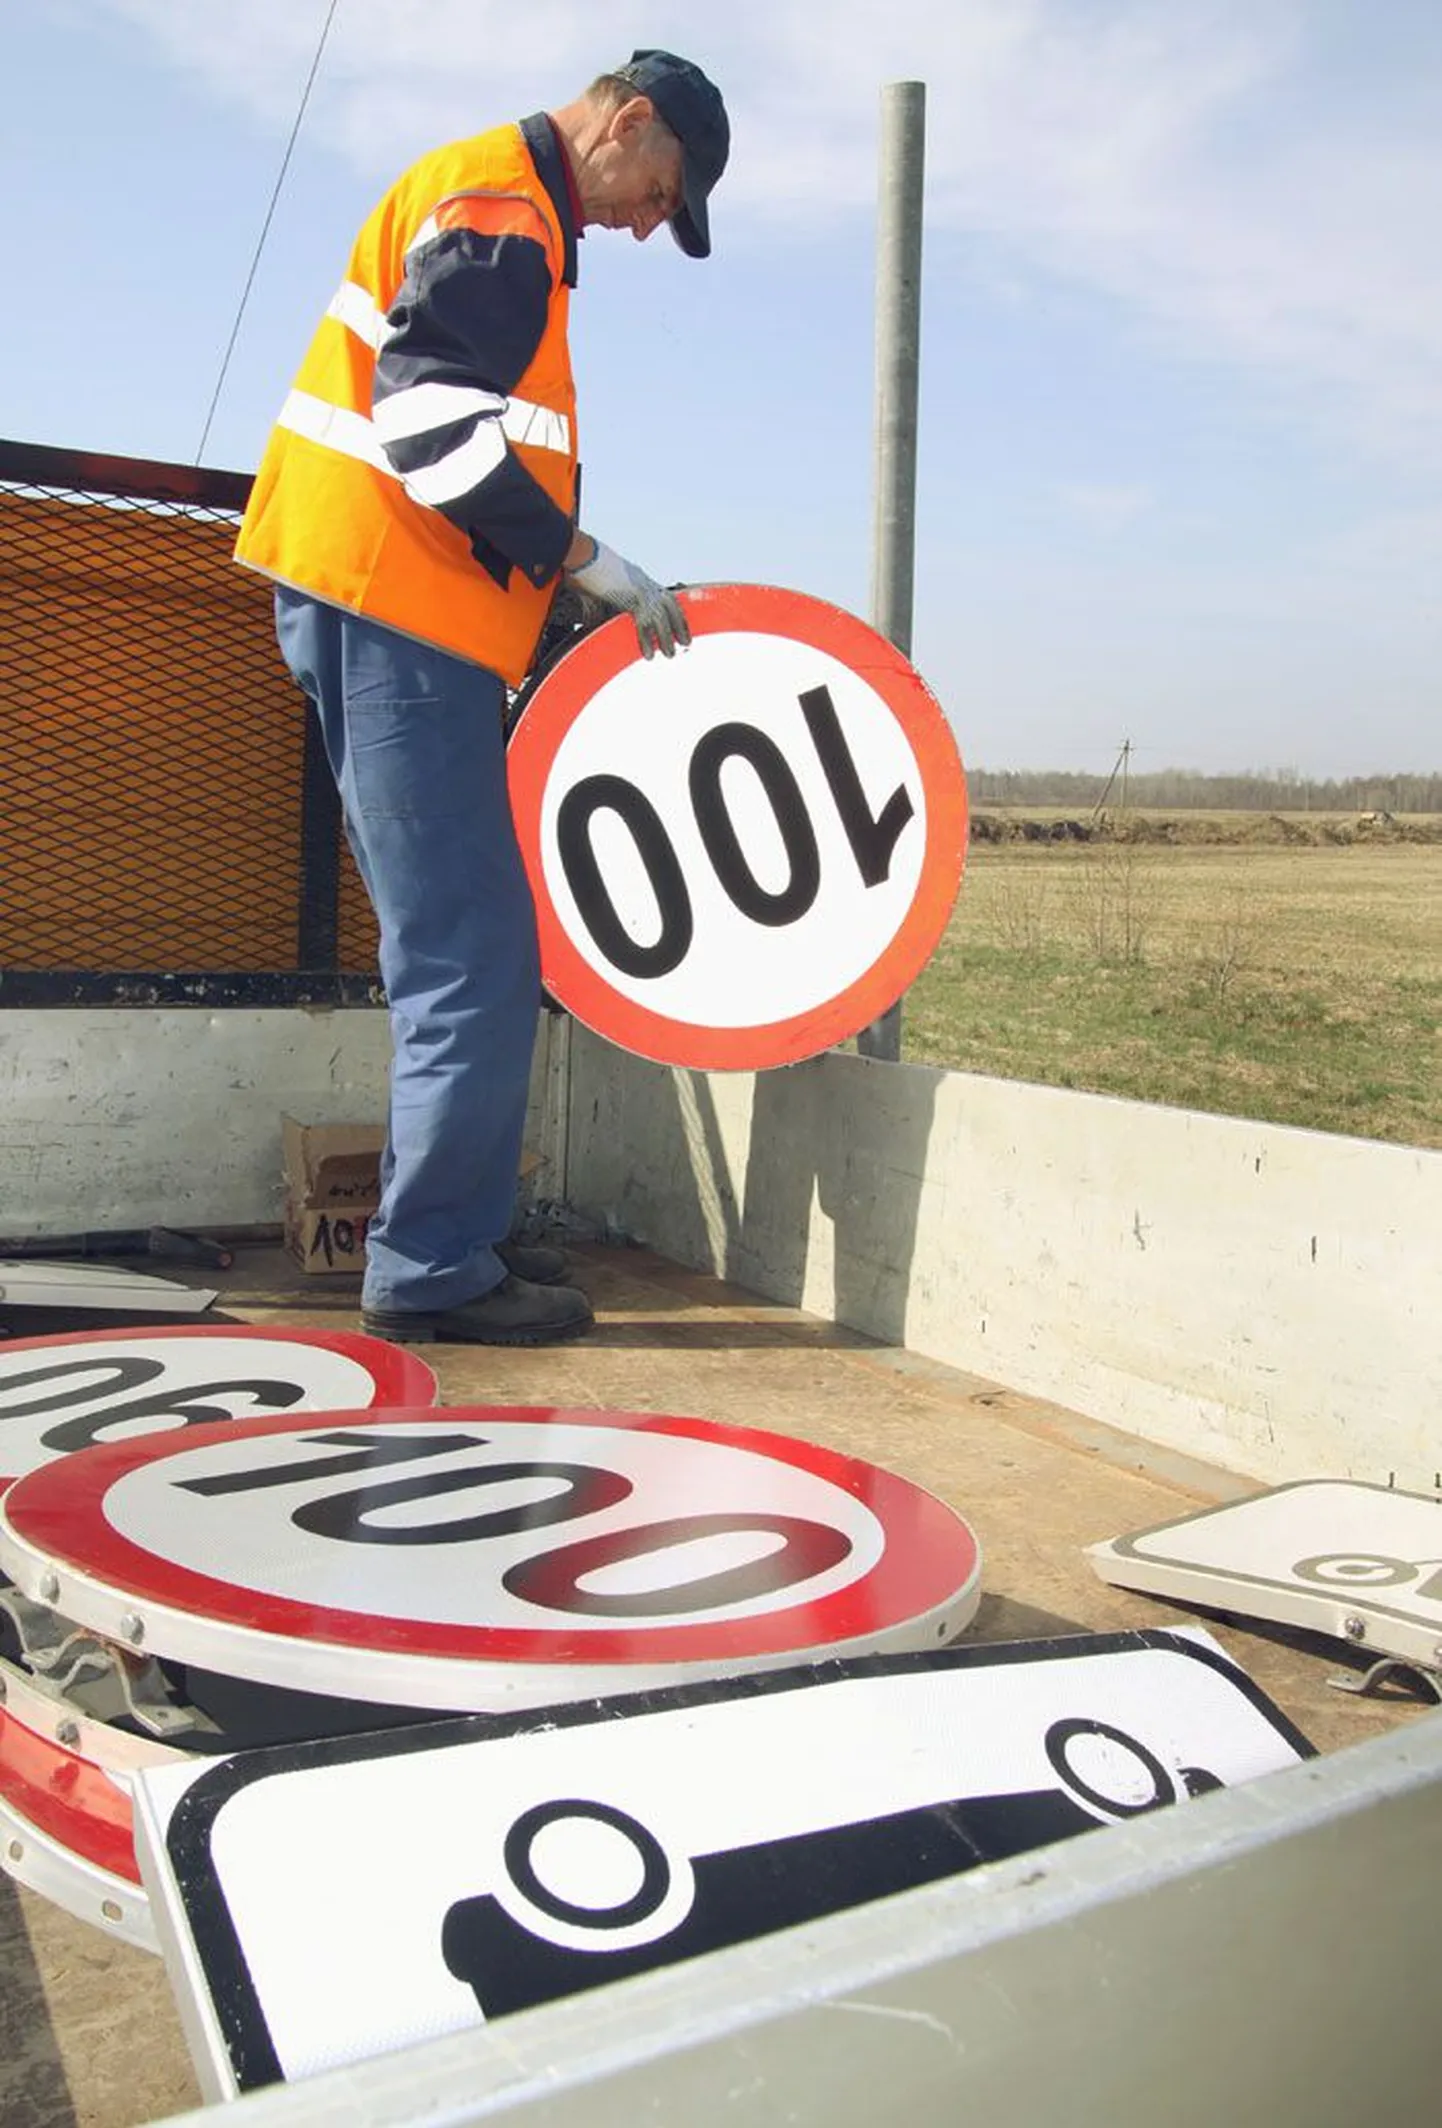 Suviste liiklusmärkide ülespanek tunamullu kevadel Pärnumaal. Tänavu jäävad kõik sajakilomeetrist tunnikiirust lubavad liiklusmärgid lattu oma aega ootama.